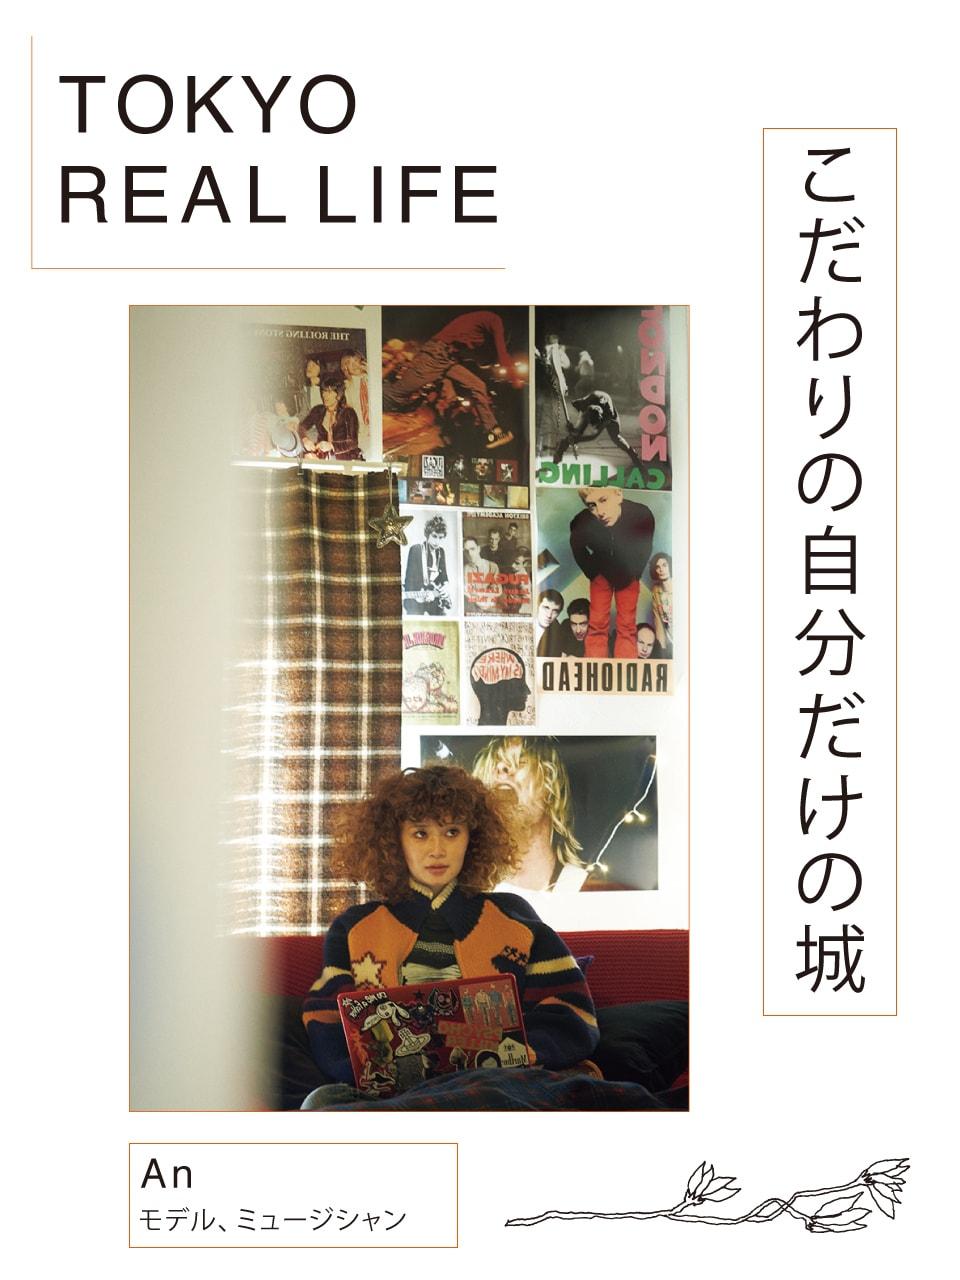 「愛するものの山の中 キノコみたいに暮らしてます」【 TOKYO REAL LIFE vol.10 Anさん】